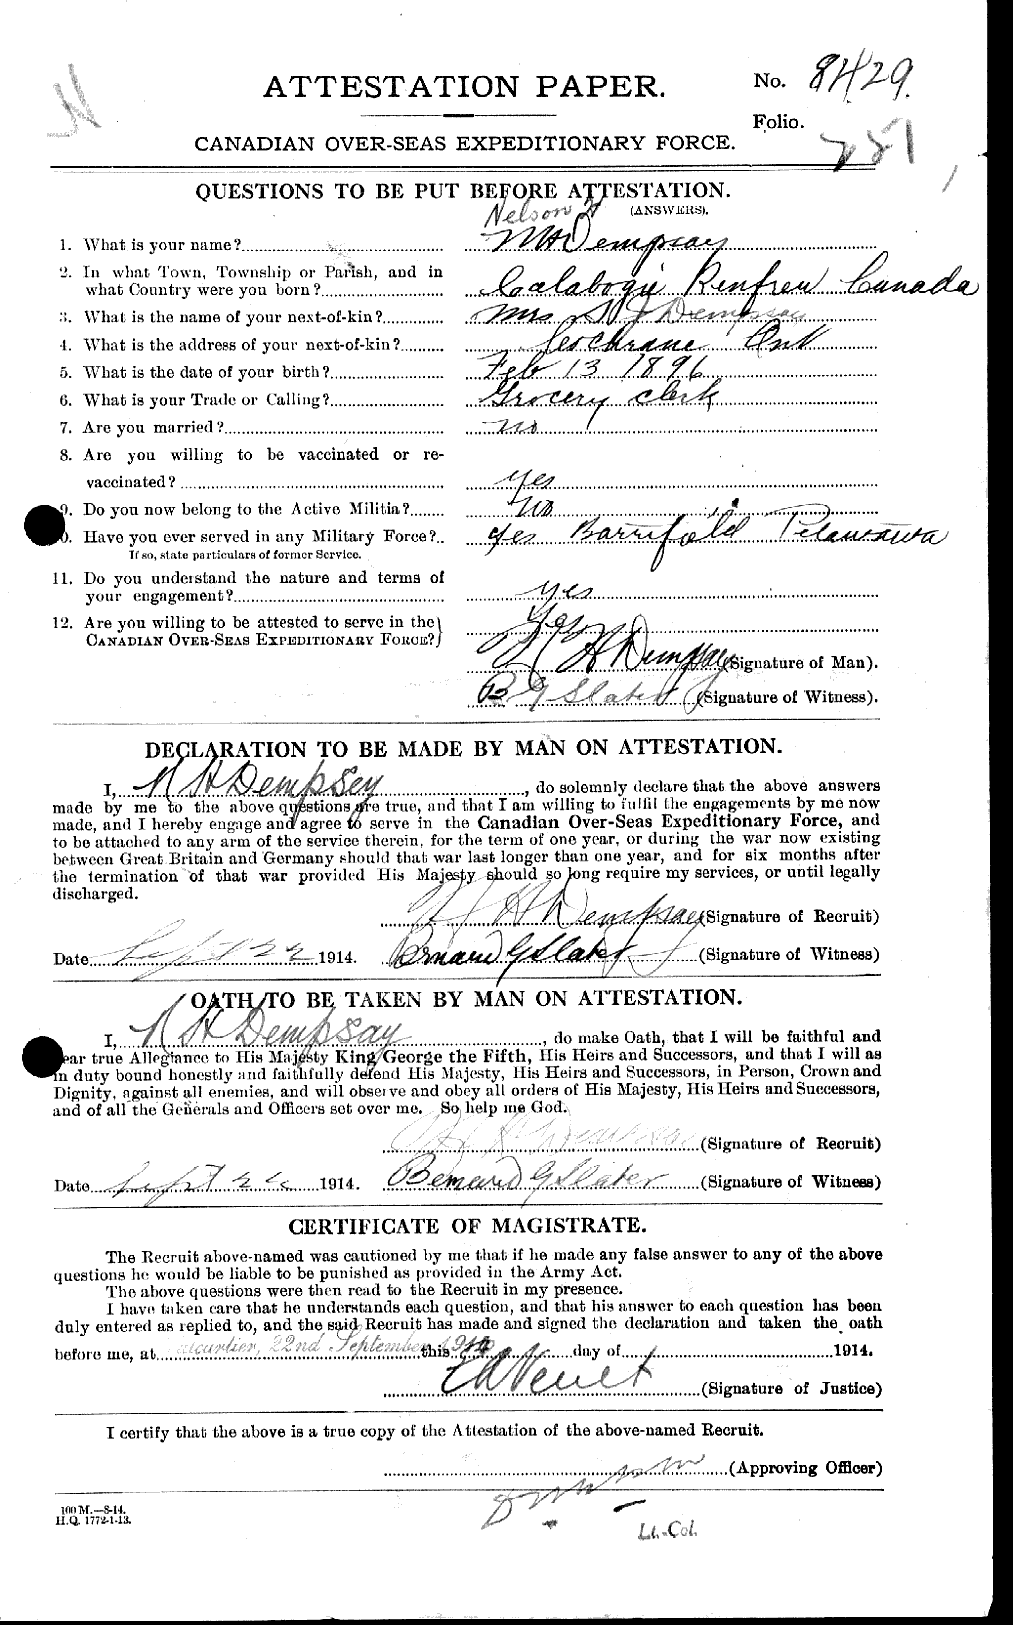 Dossiers du Personnel de la Première Guerre mondiale - CEC 051285a